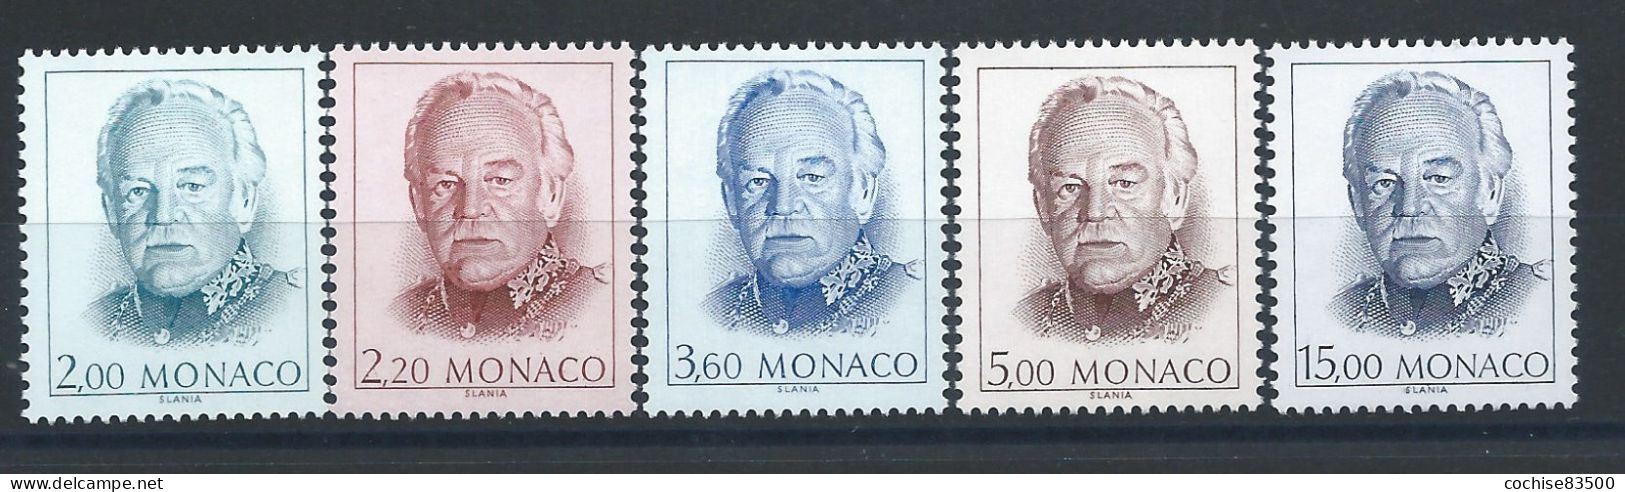 Monaco N°1671/75** (MNH) 1989 - Prince Rainier III - Nuevos